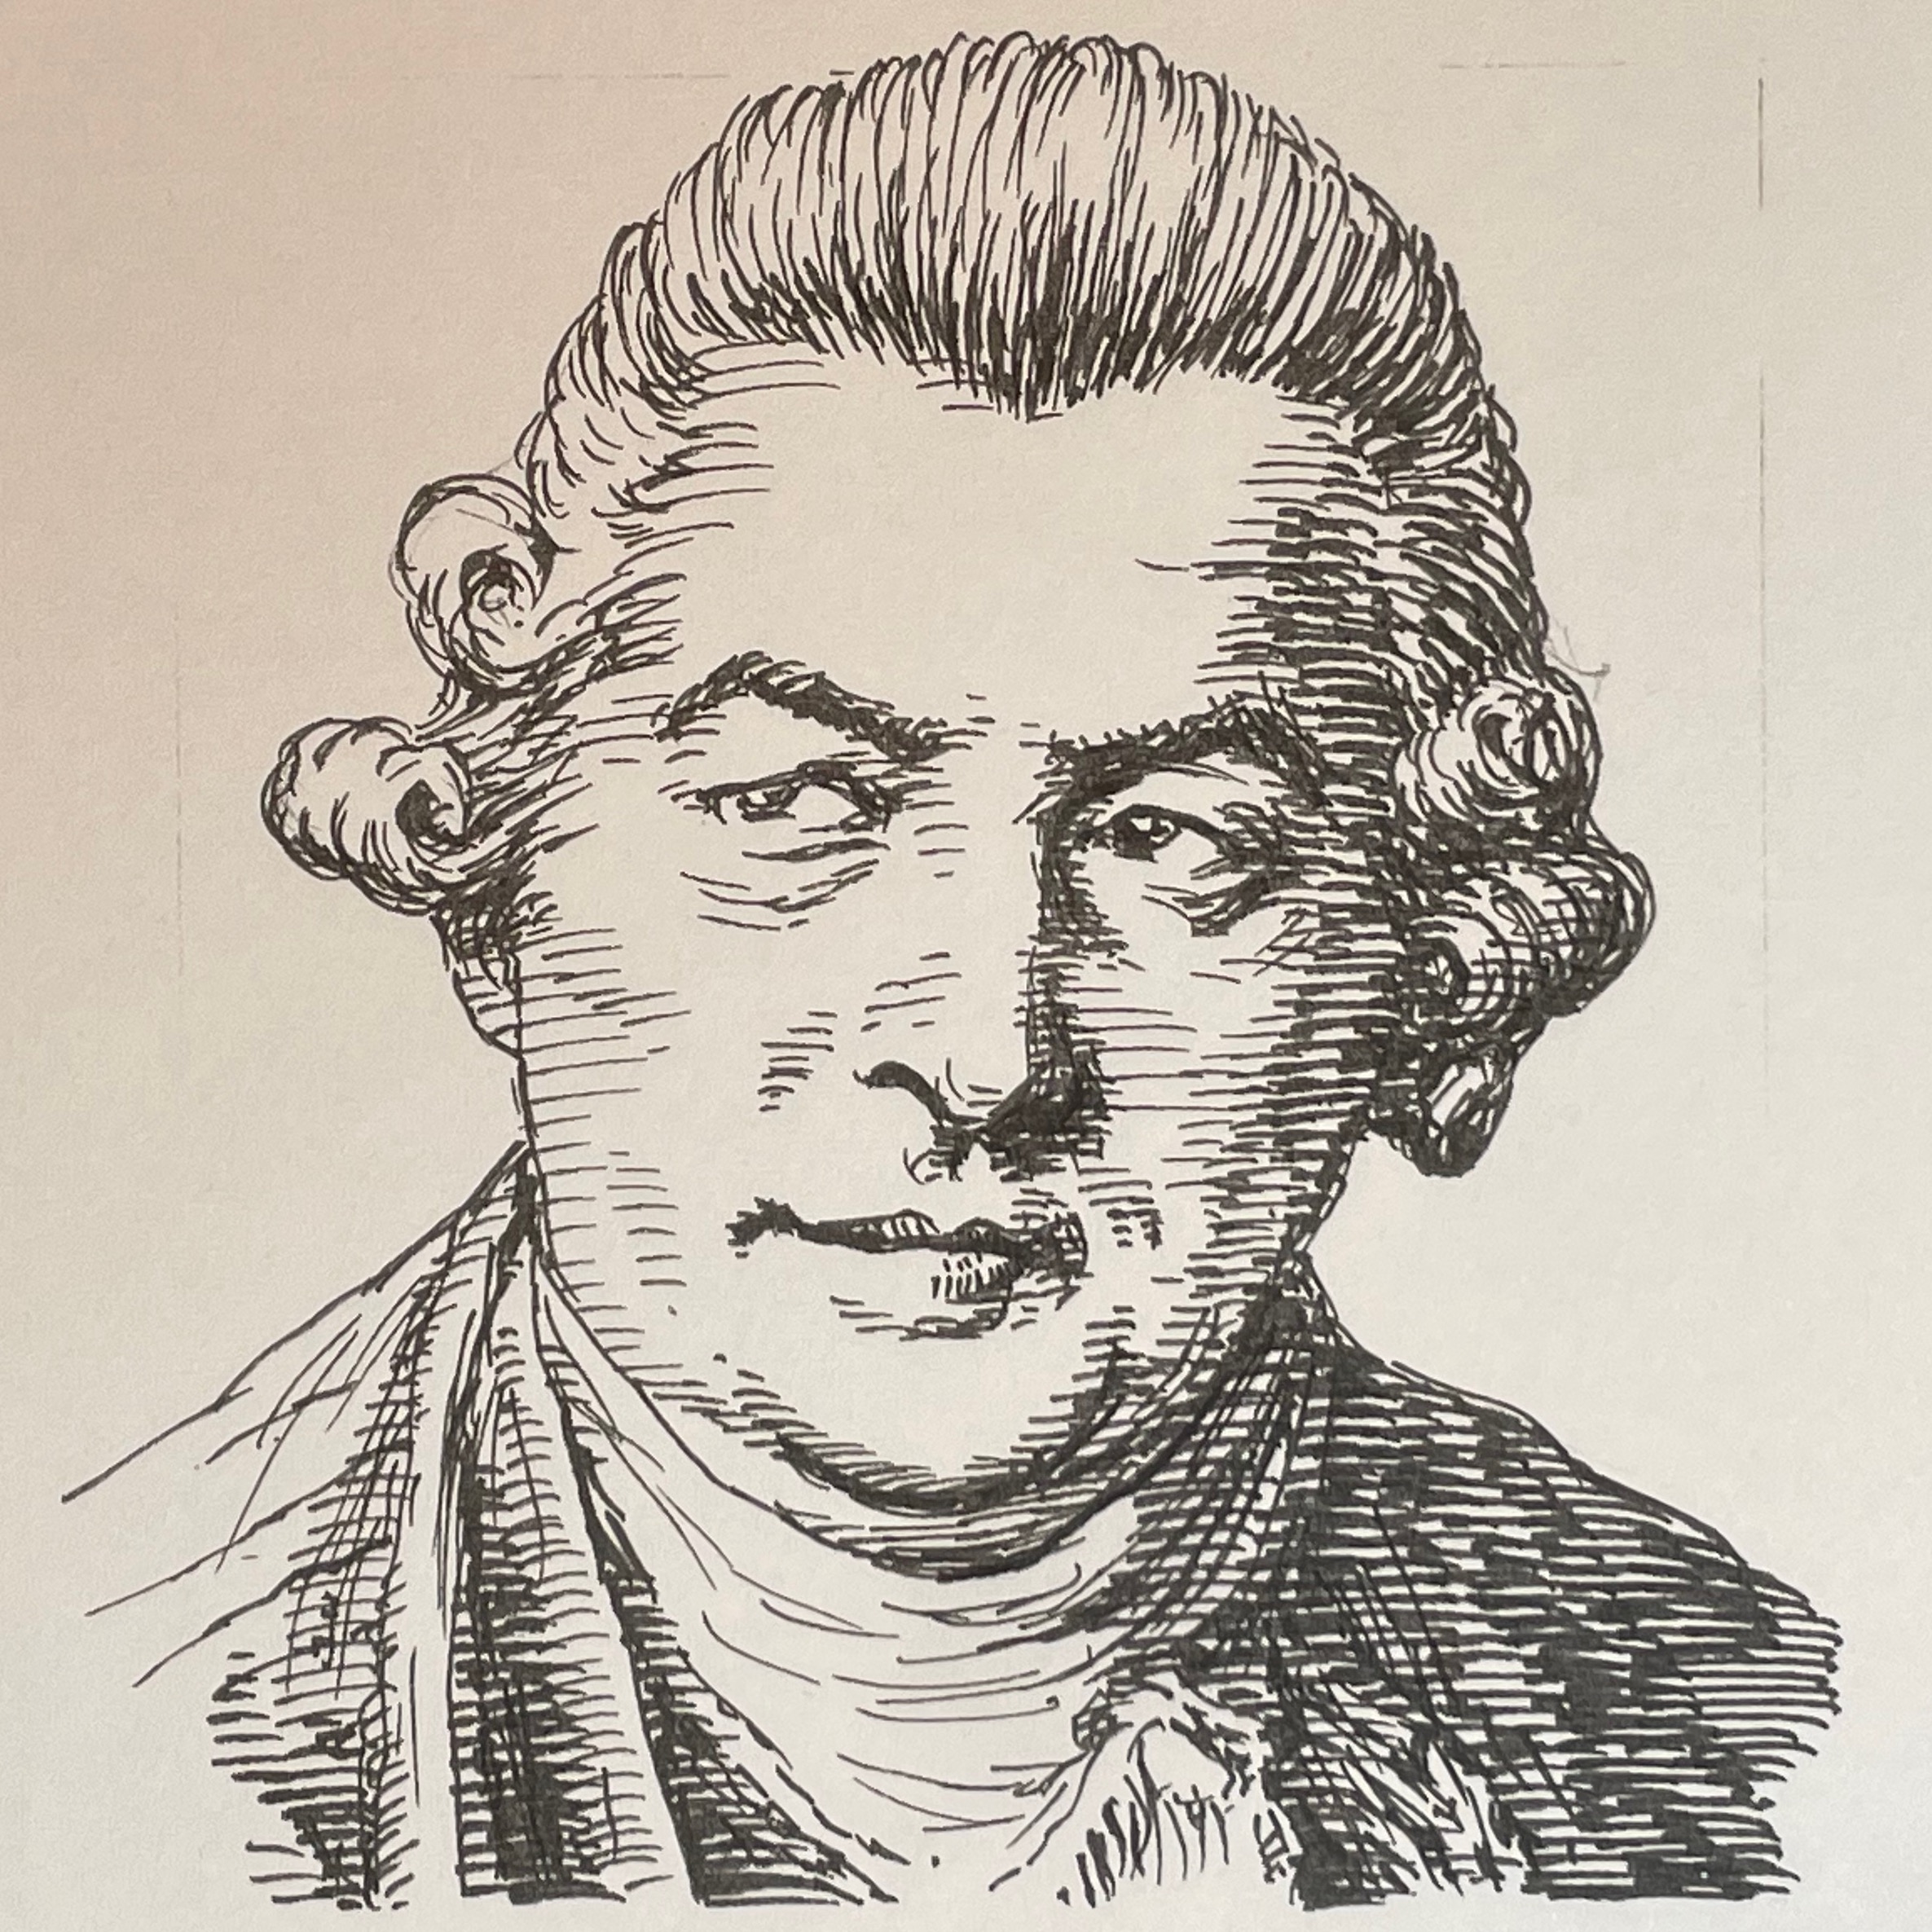 1735-1782を生きた作曲家。J.S.Bachの18番目の子であり、父J.S.Bachの亡き後、C.P.E.Bachに育てられ、その後イタリアへ留学し、サンマルティーニに学びミラノ大聖堂のオルガニストとして研鑽を積んだ。その後英国にわたり、シャーロット王妃の音楽教師となり活躍。Bach一族の中で唯一オペラを手がけた。 ミラノのバッハ、ロンドンのバッハとも呼ばれる。